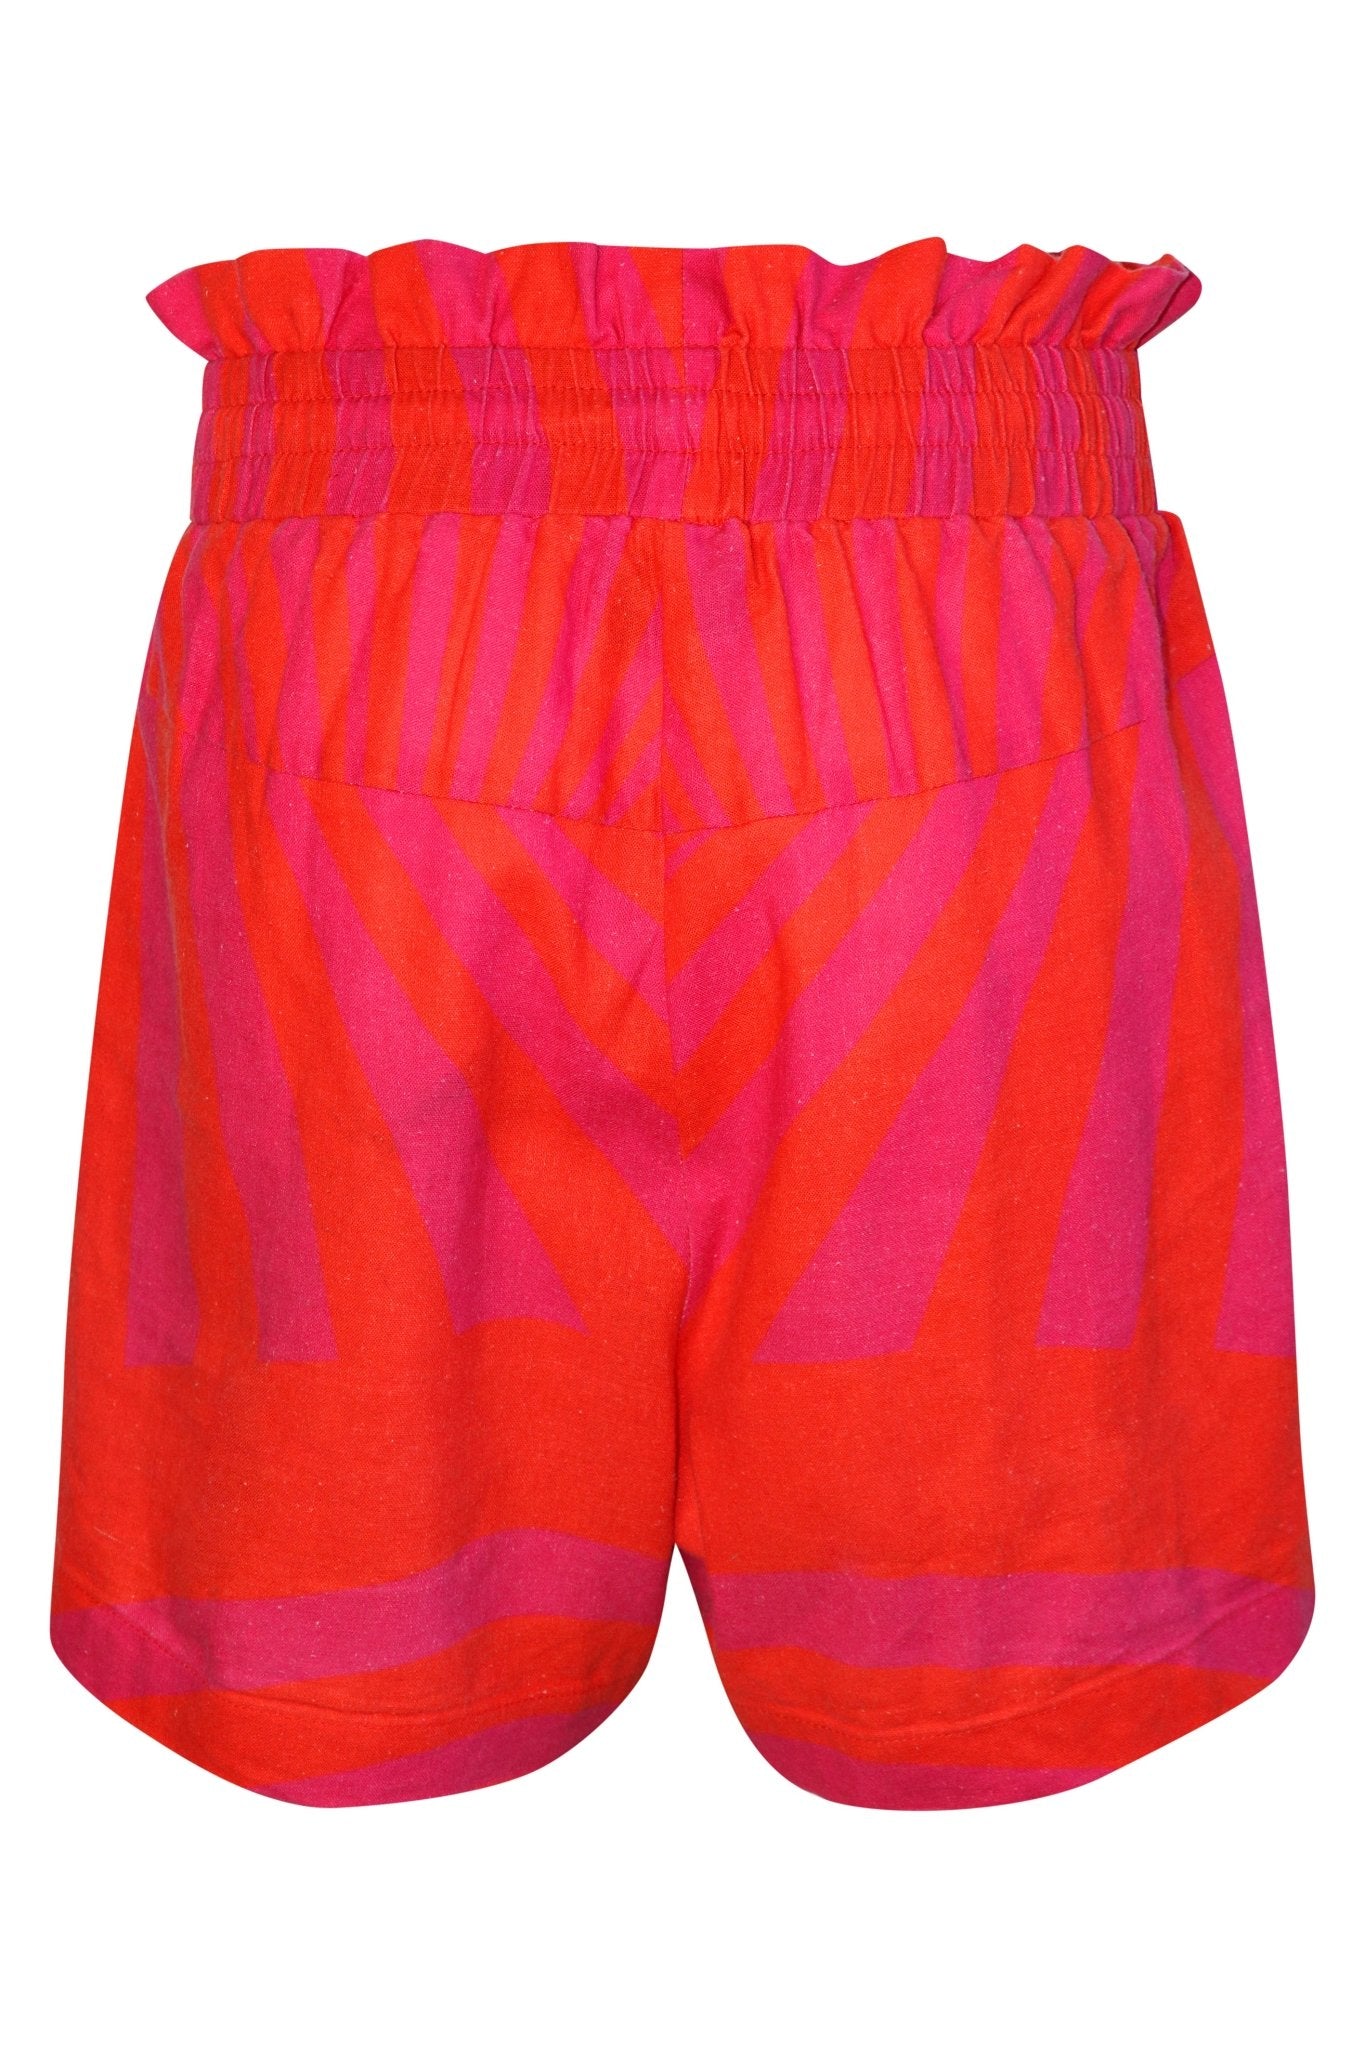 Iti iti Shorts - ā waha (hot pink/orange) - Sweepstake Winners™